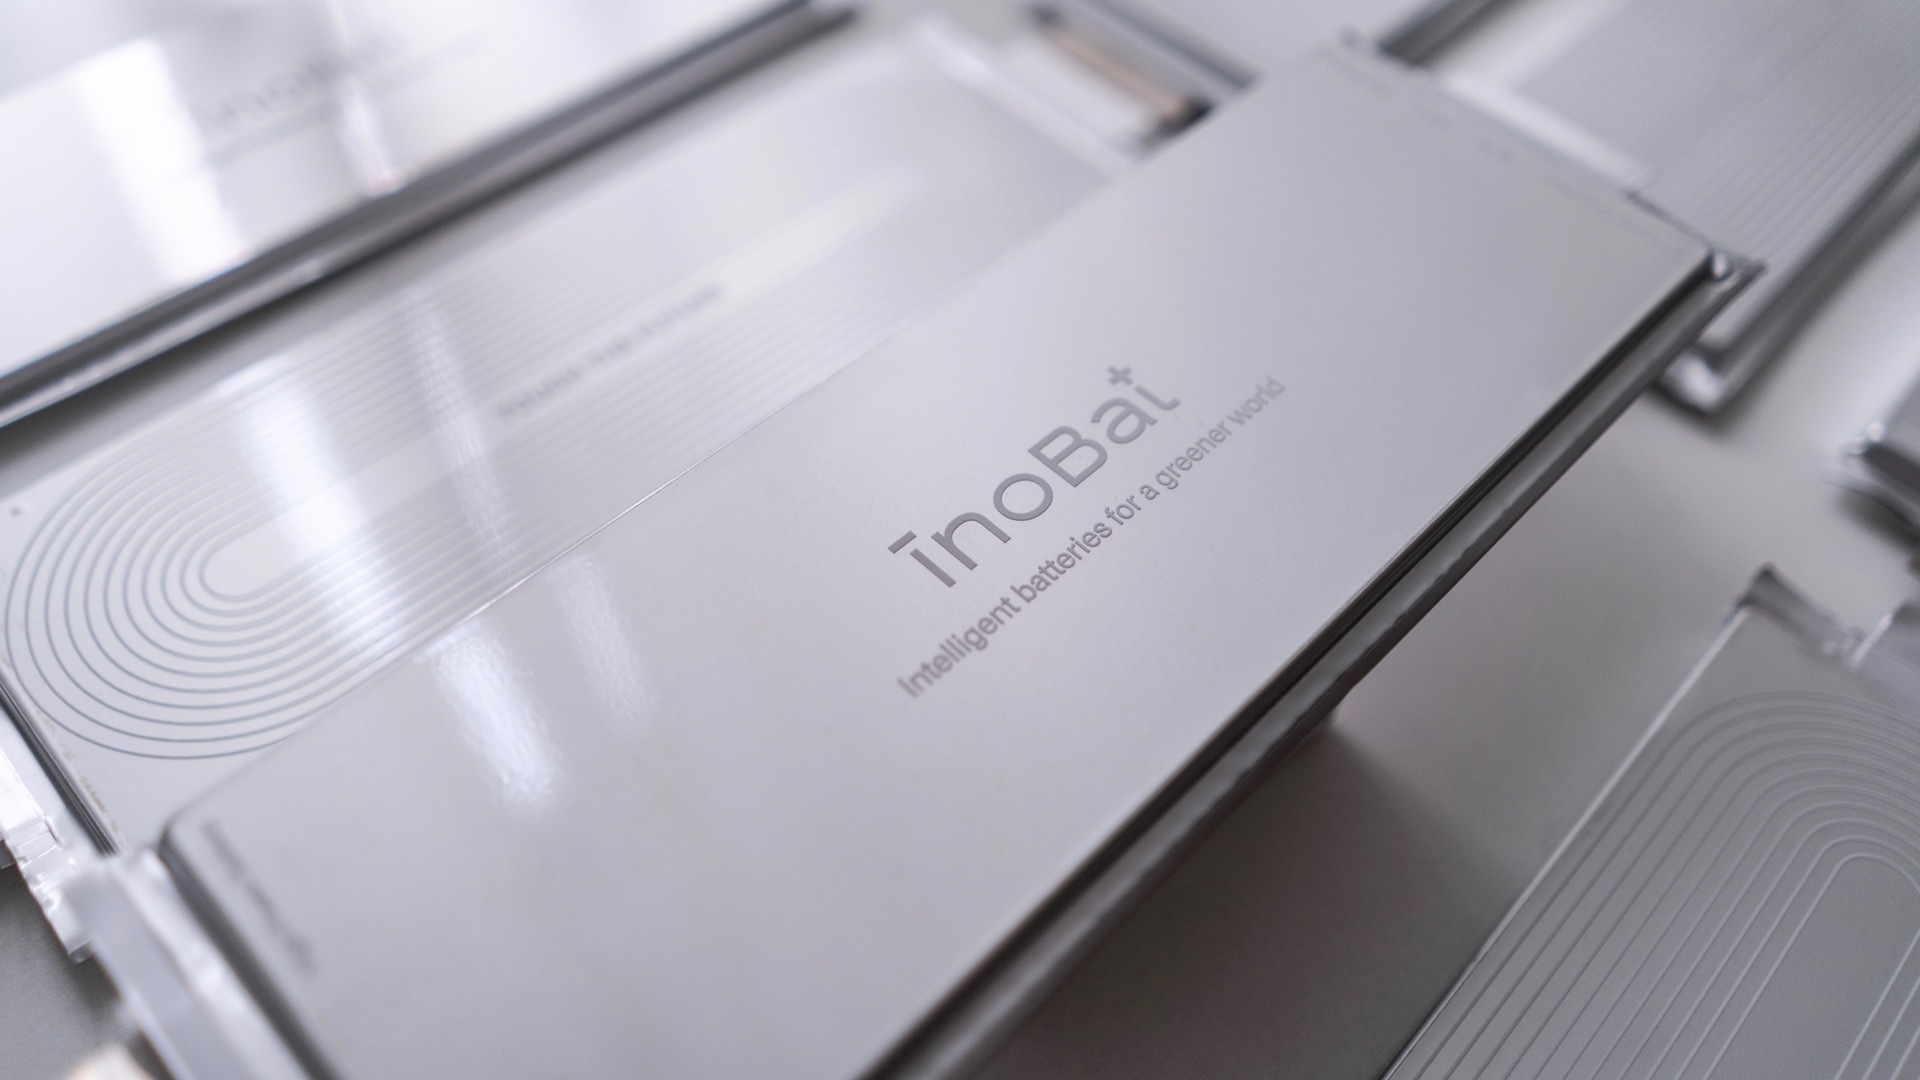 InoBat Auto batteries